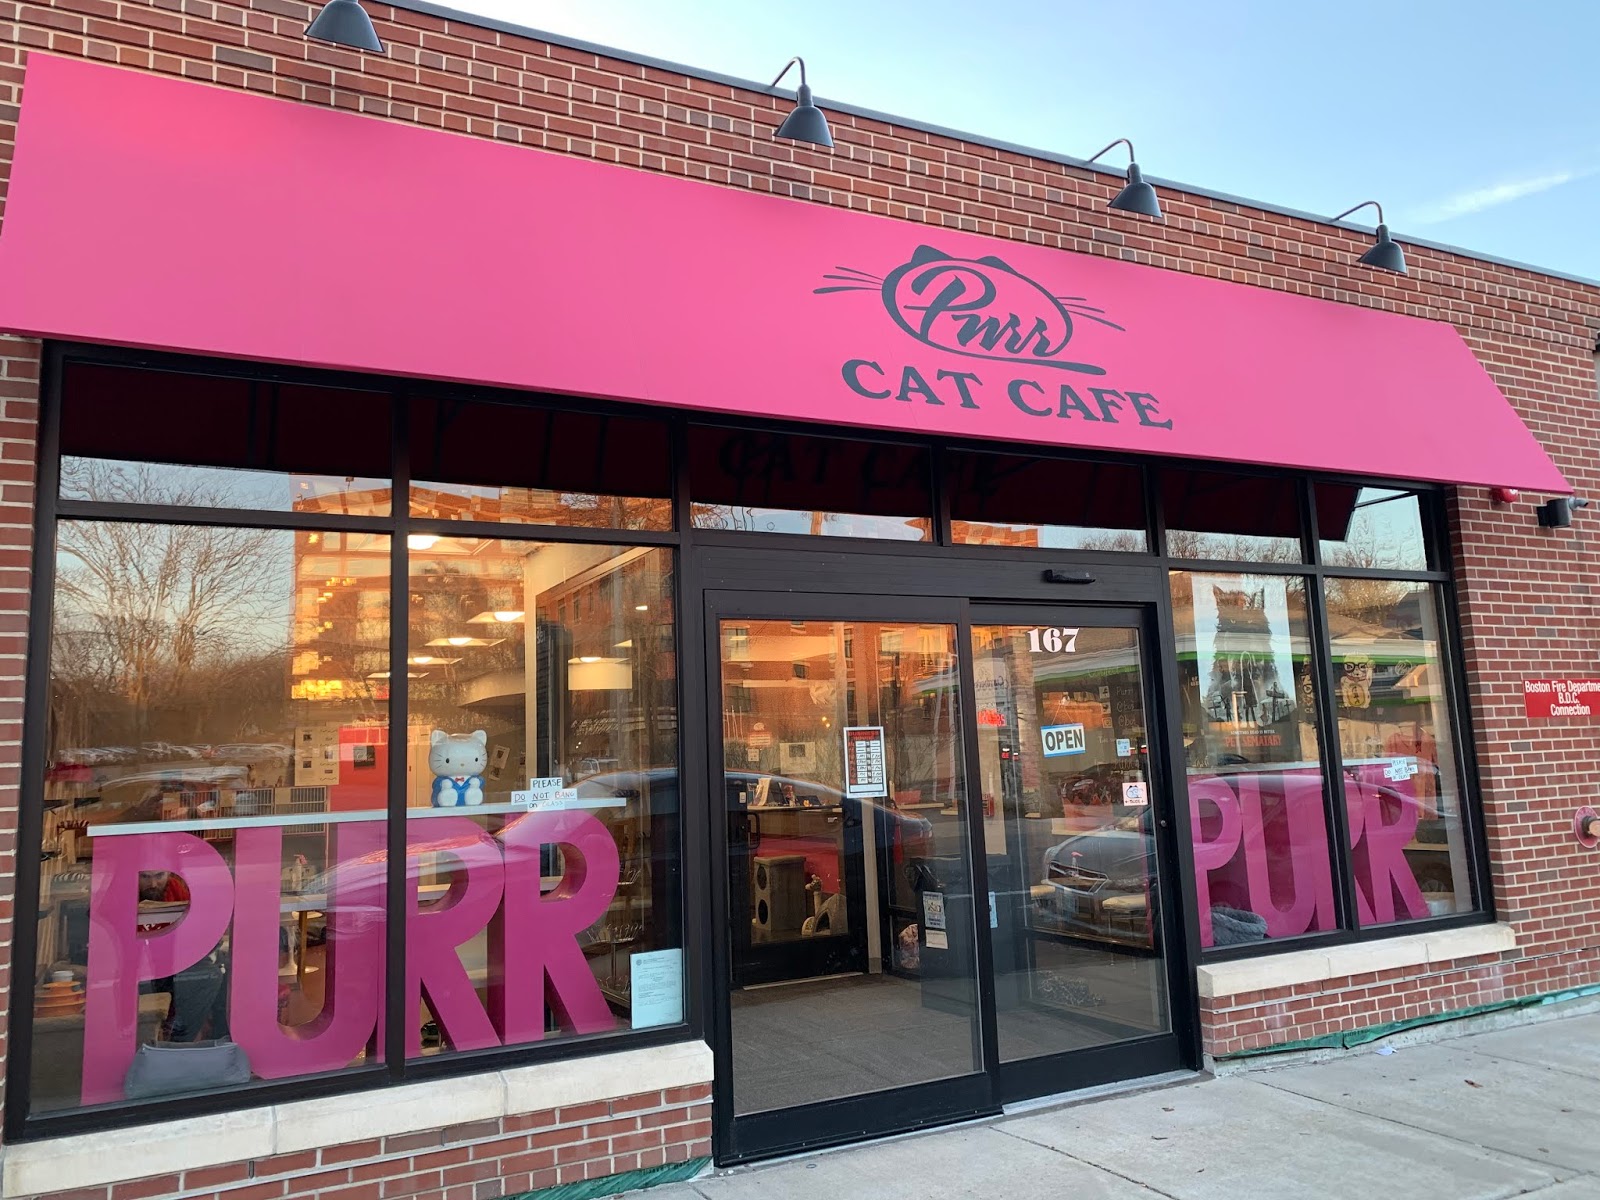 PURR Cat Cafe Boston, Massachusetts